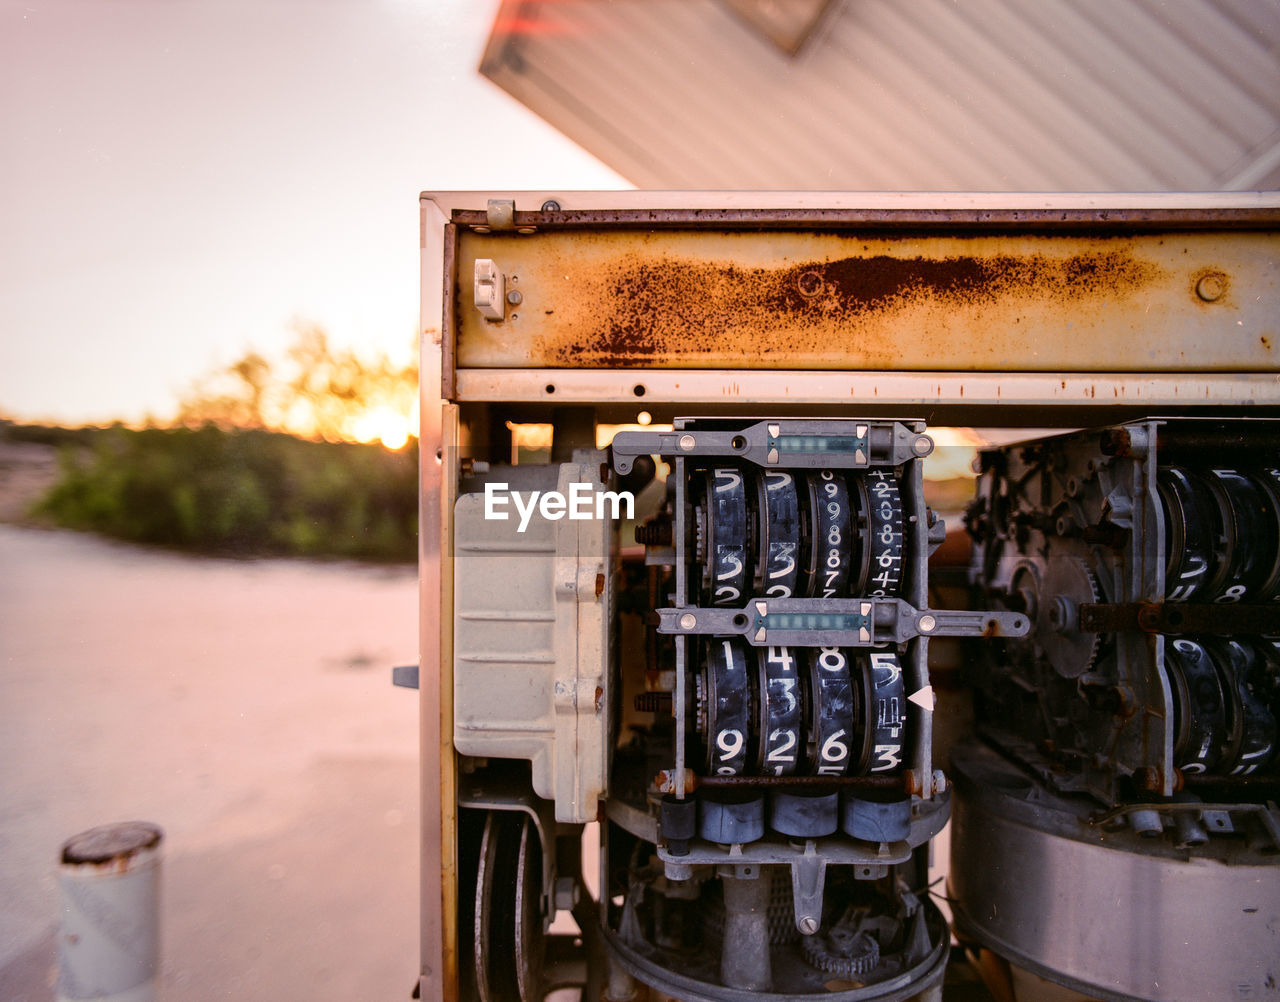 Close-up of fuel pump